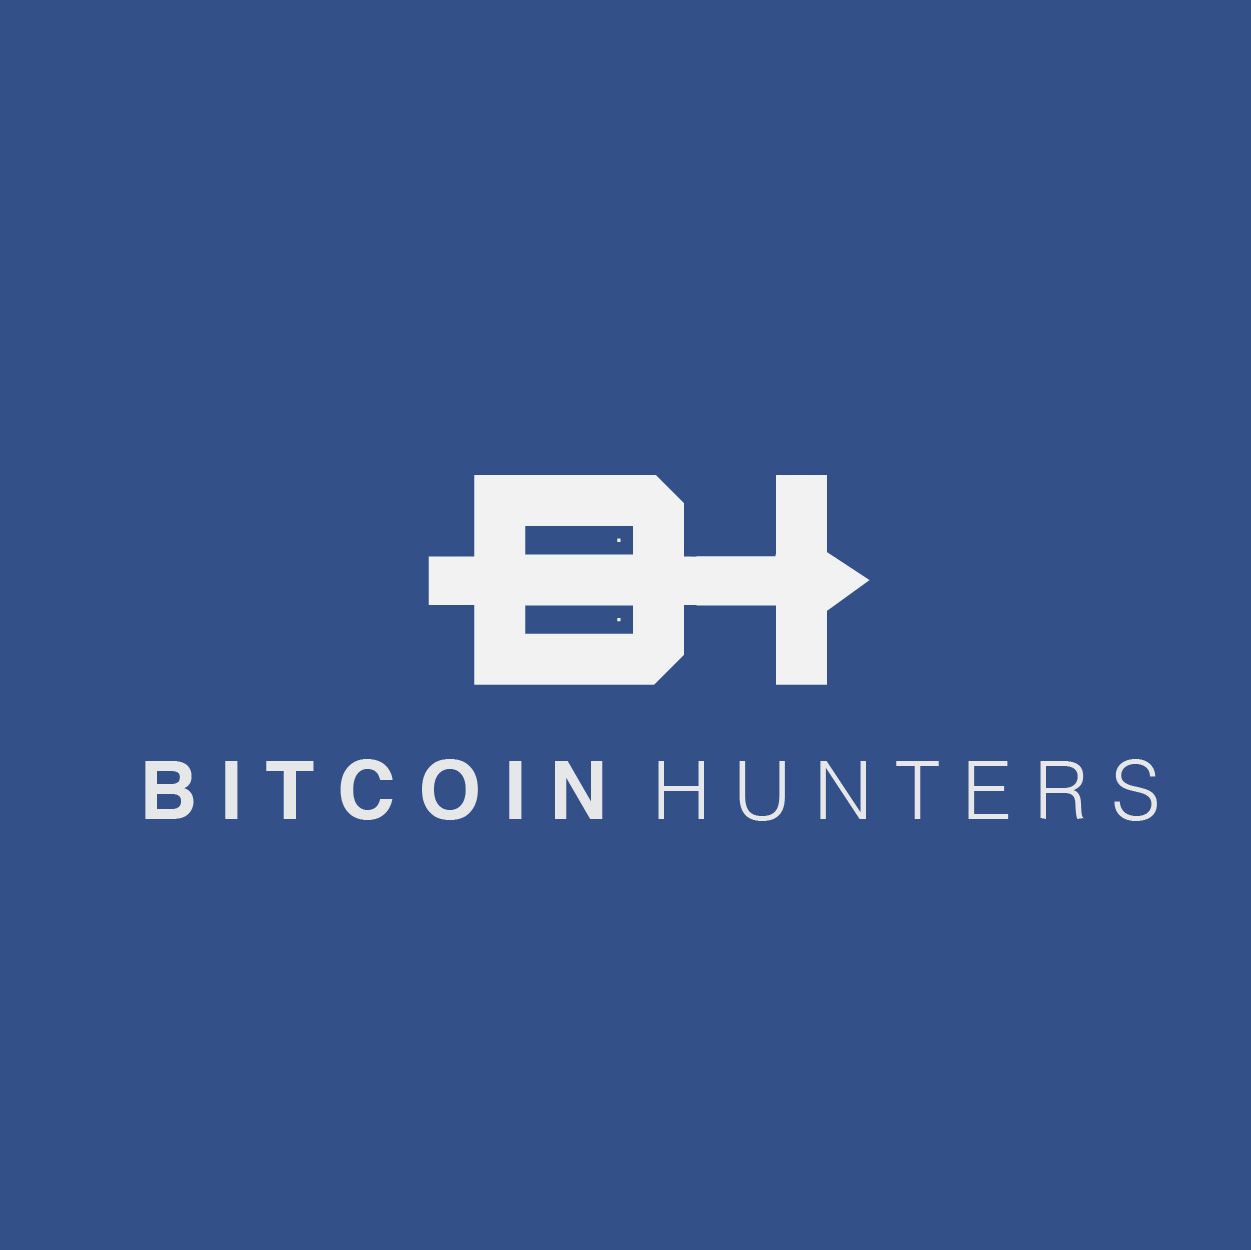 Logotyp Bitcoin Hunters - projektowanie logotypów portfolio